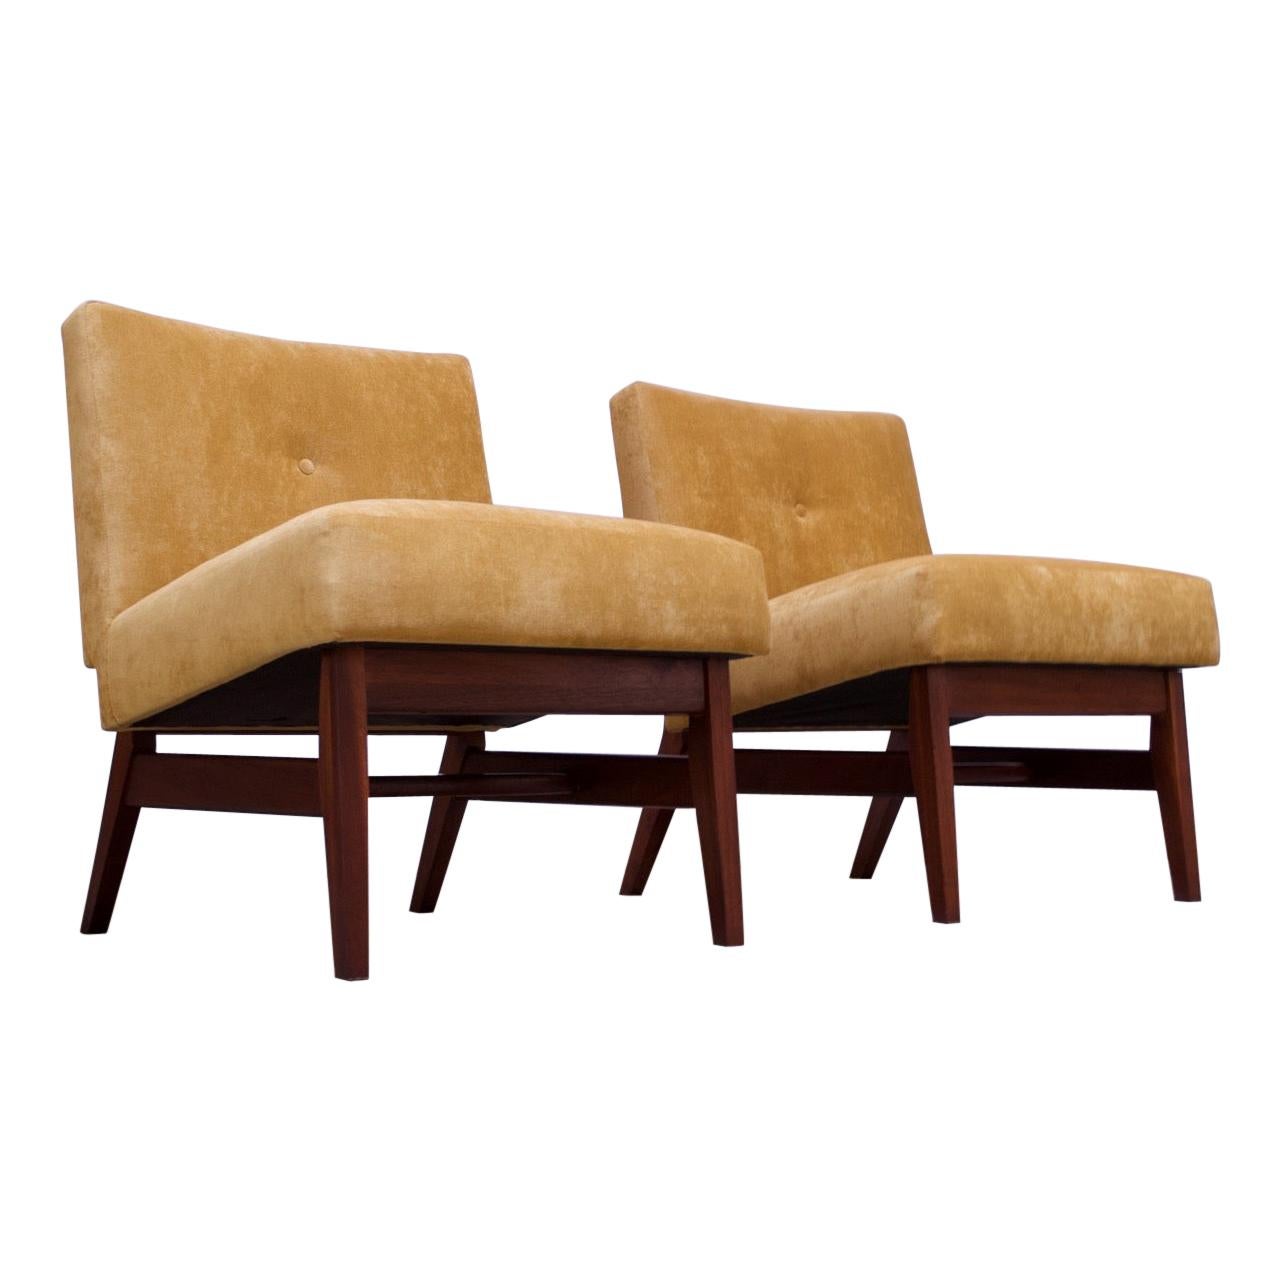 Midcentury American Modern Walnut and Velvet Slipper Chairs